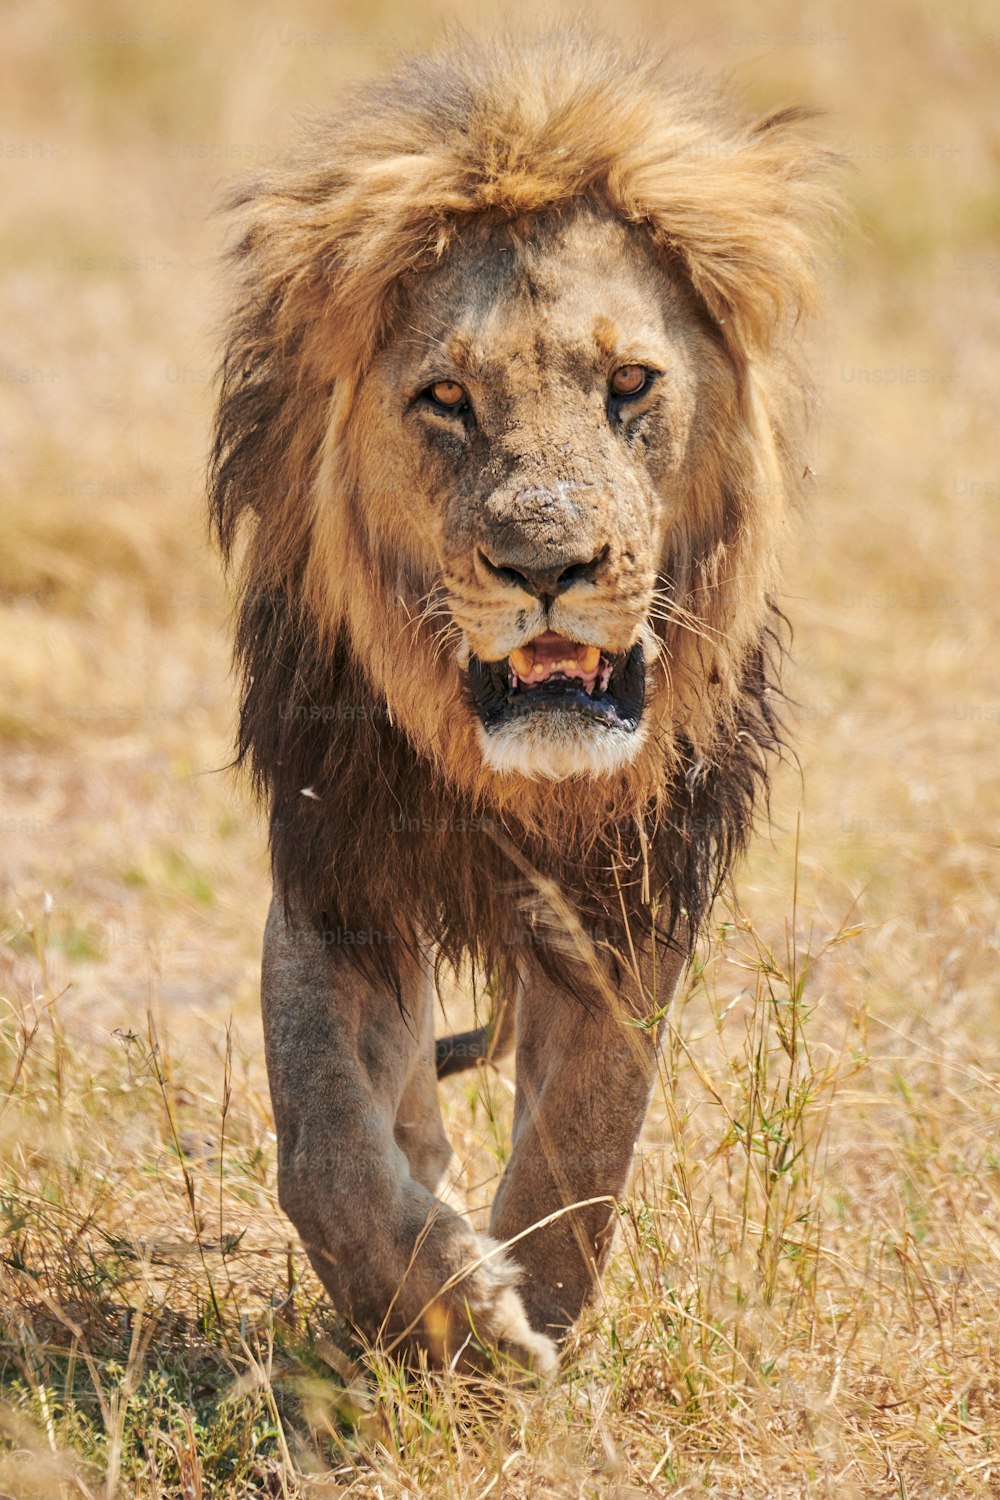 Bellissimo ed enorme leone maschio (Panthera leo), un vero re, che cammina maestoso nella selvaggia boscaglia africana.